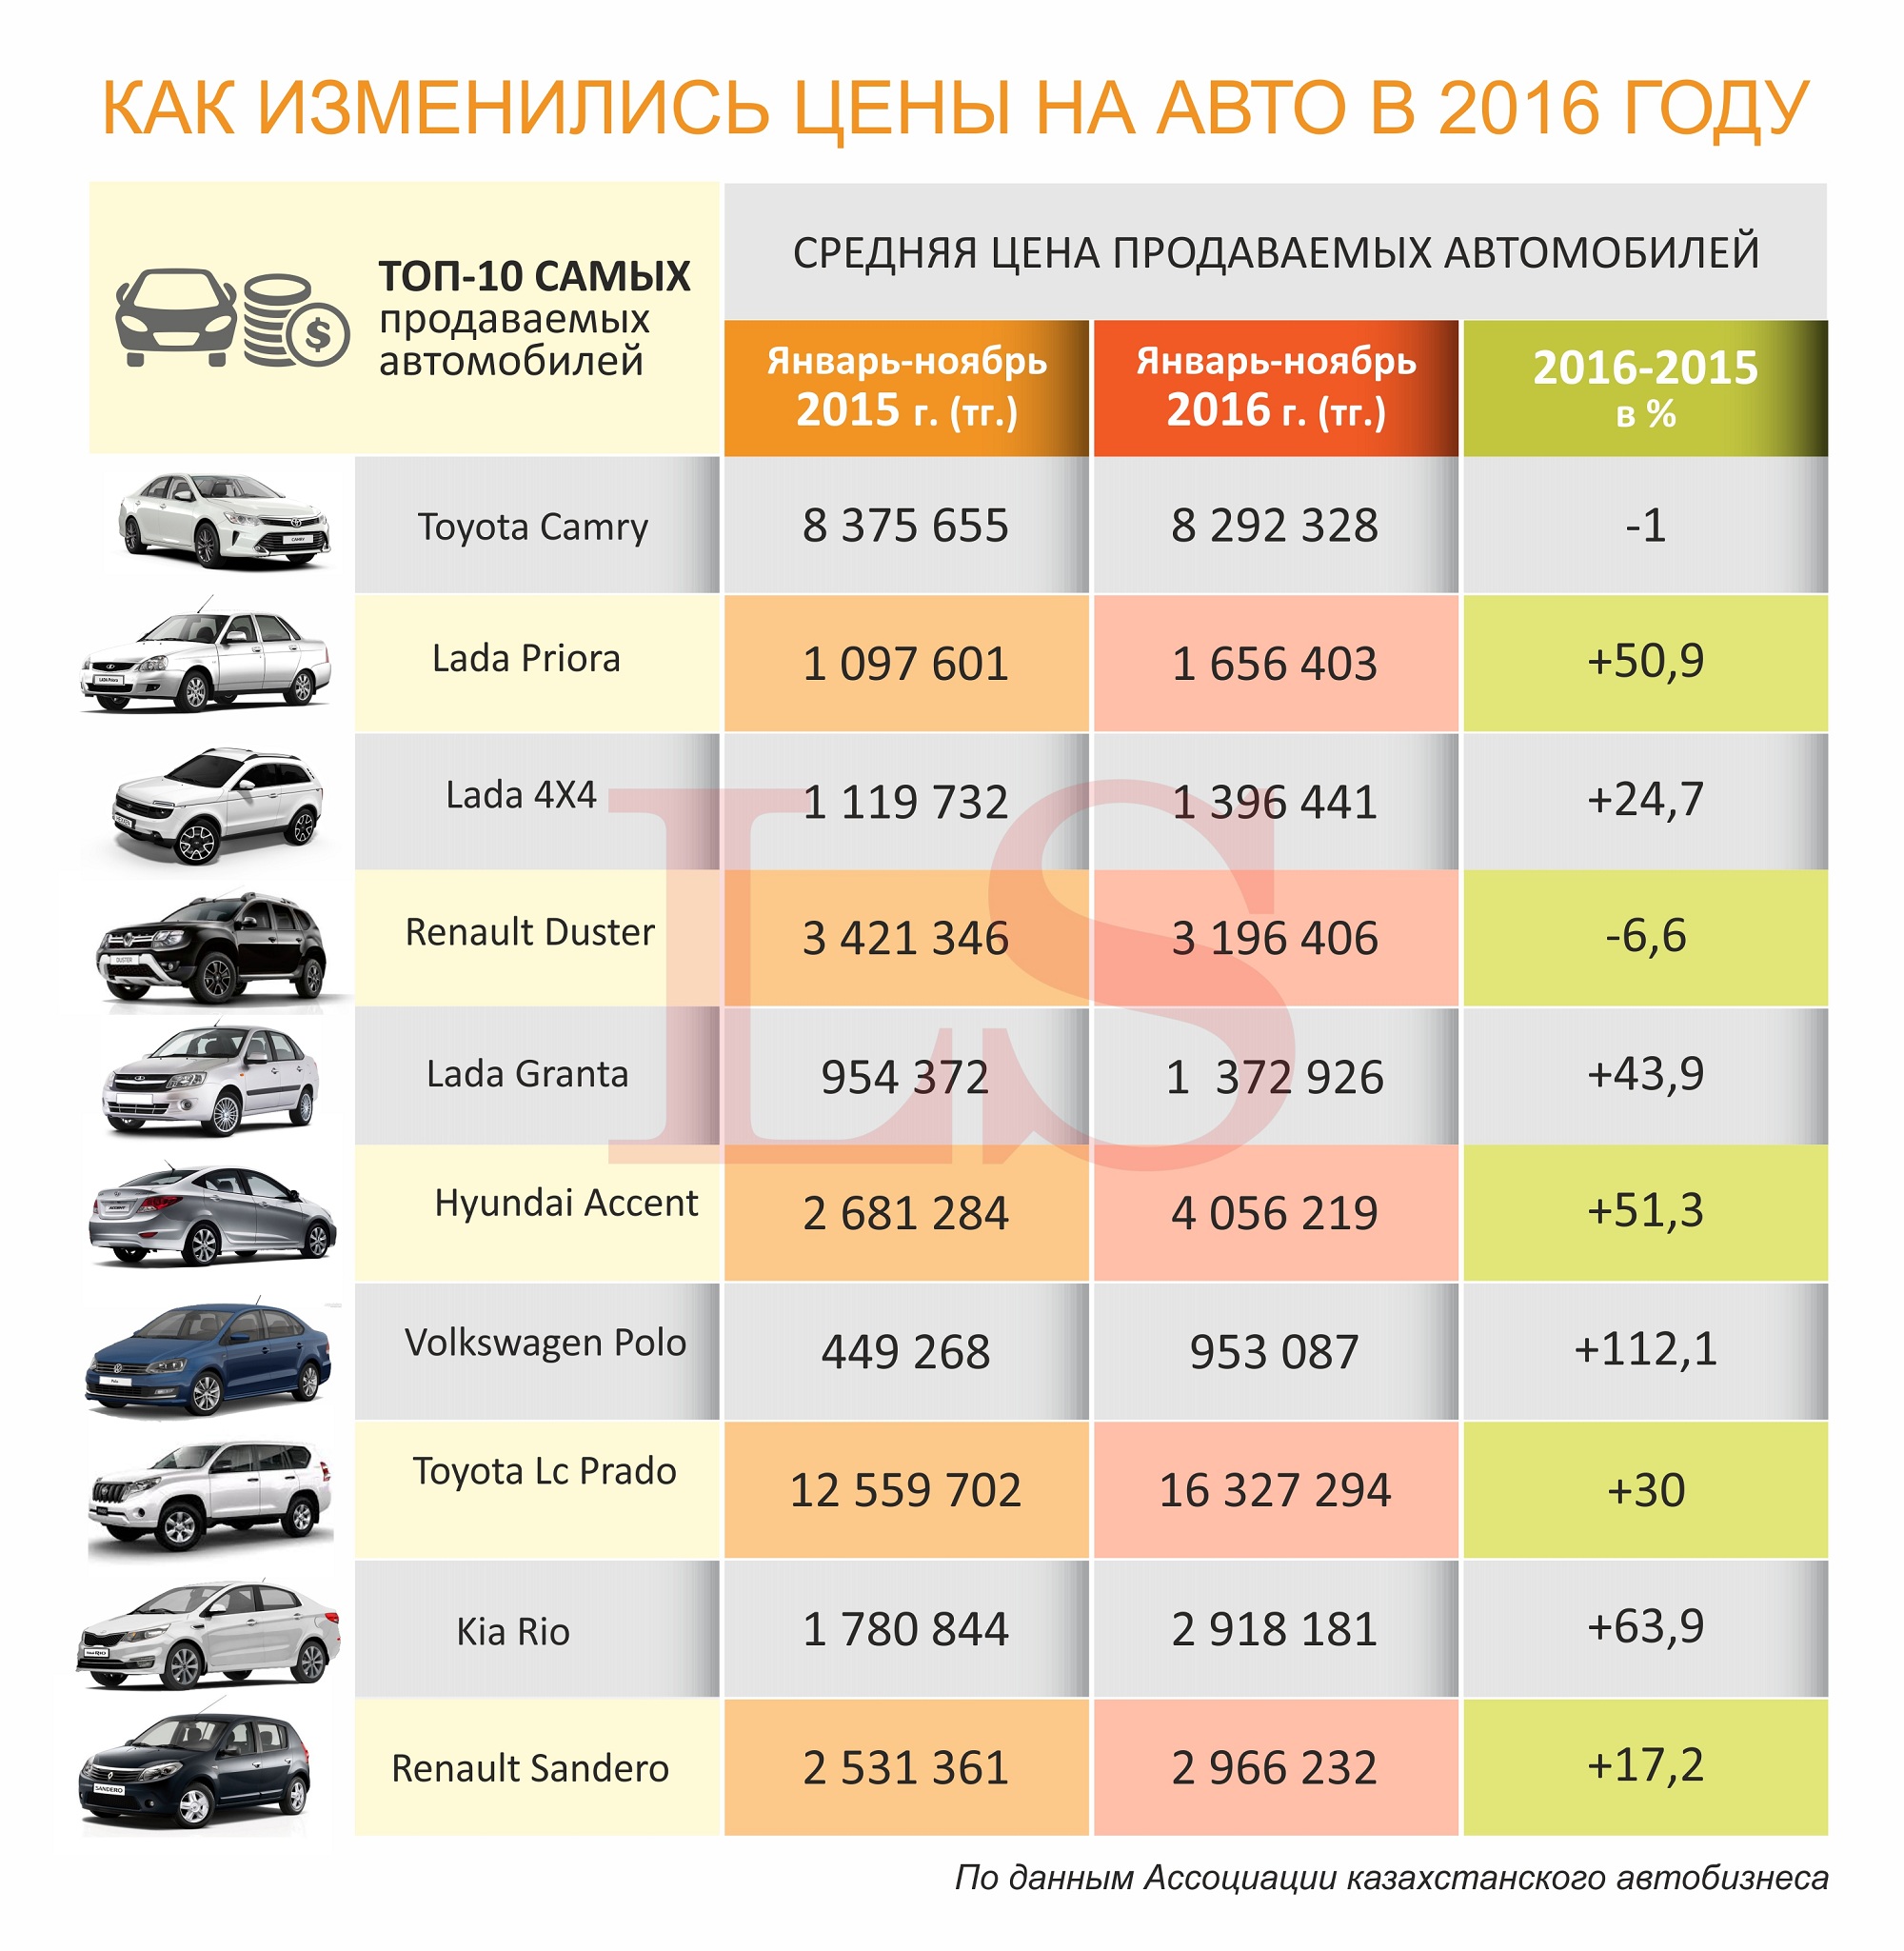 Сколько Стоит Страховка На Машину В Казахстане